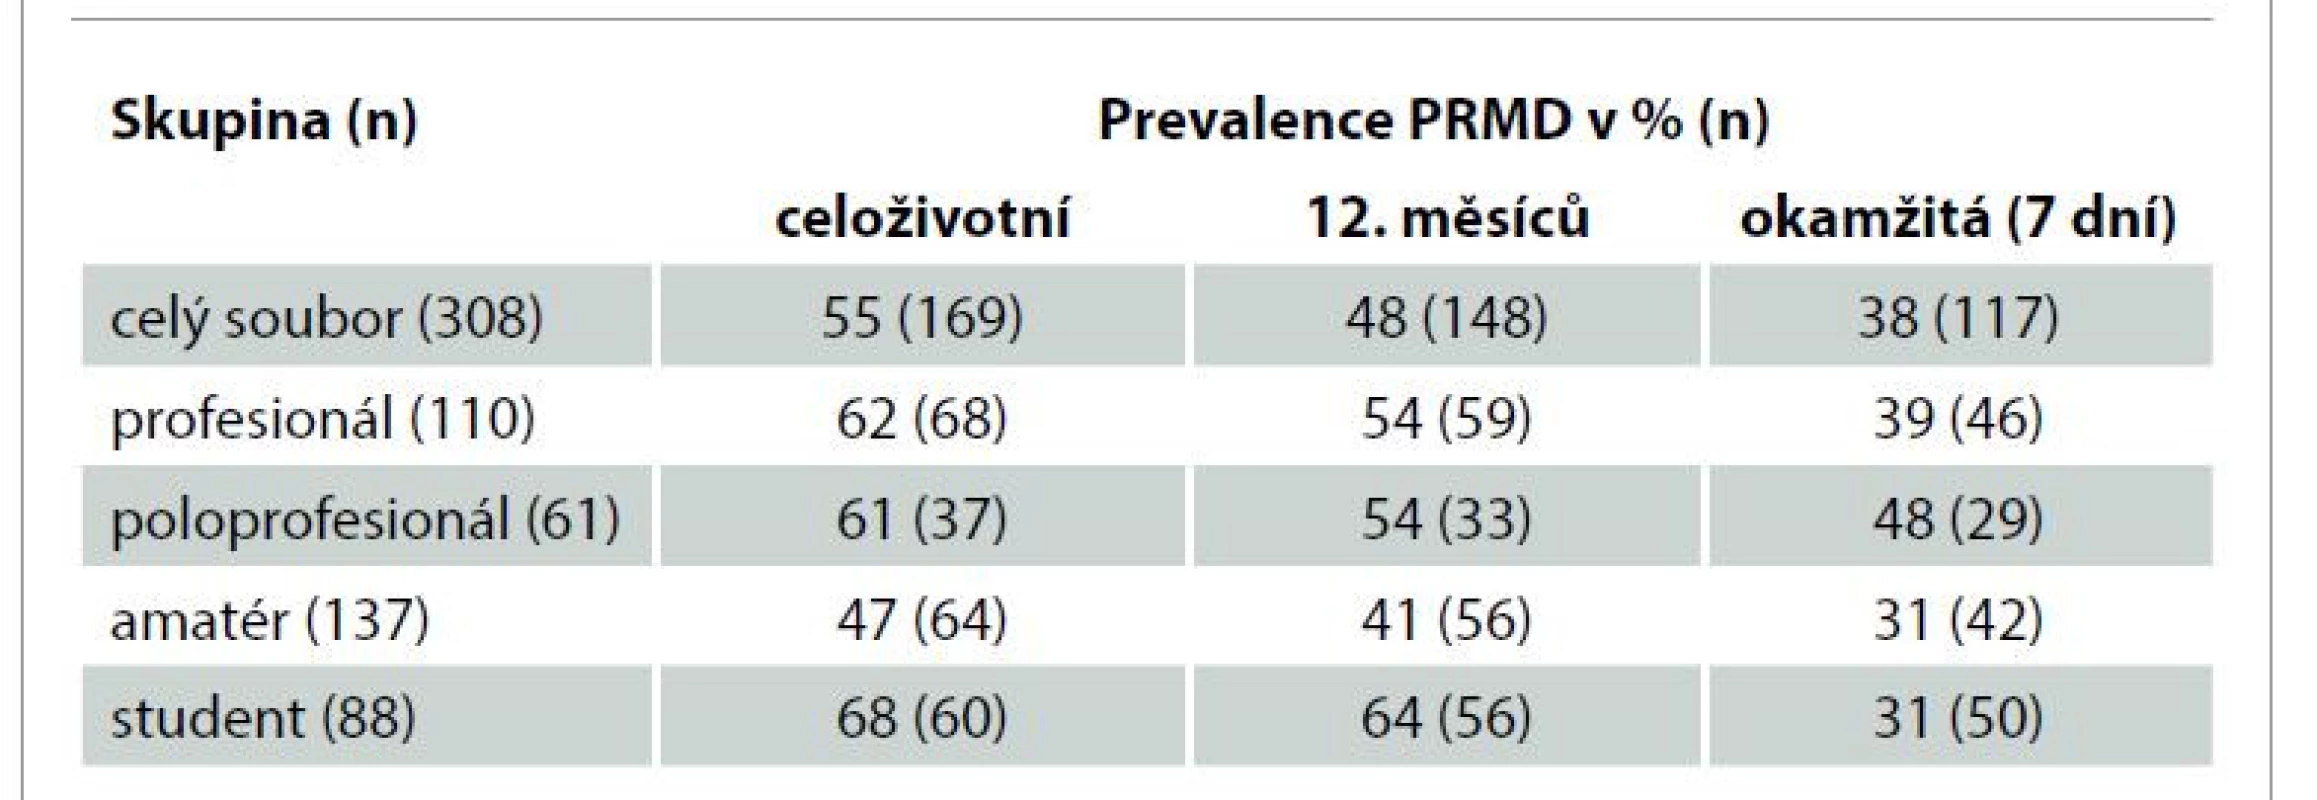 Prevalence PRMD.<br>
Tab. 1. Prevalence of PRMD.